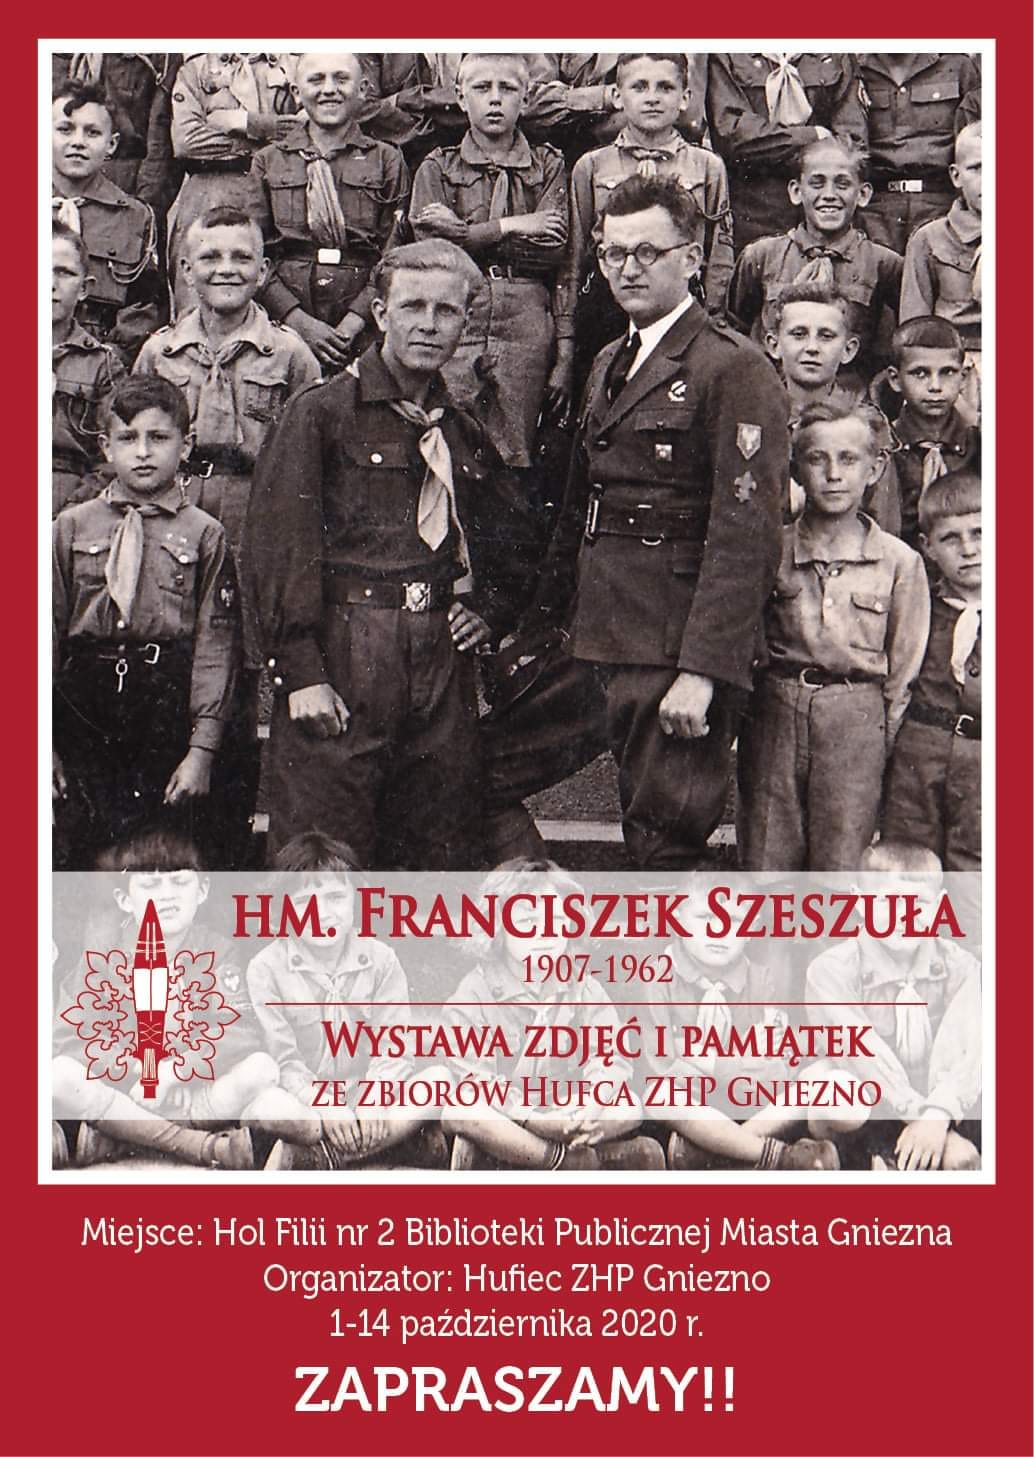 Wystawa poświęcona Franciszkowi Szeszule – zasłużonemu komendantowi Hufca ZHP Gniezno